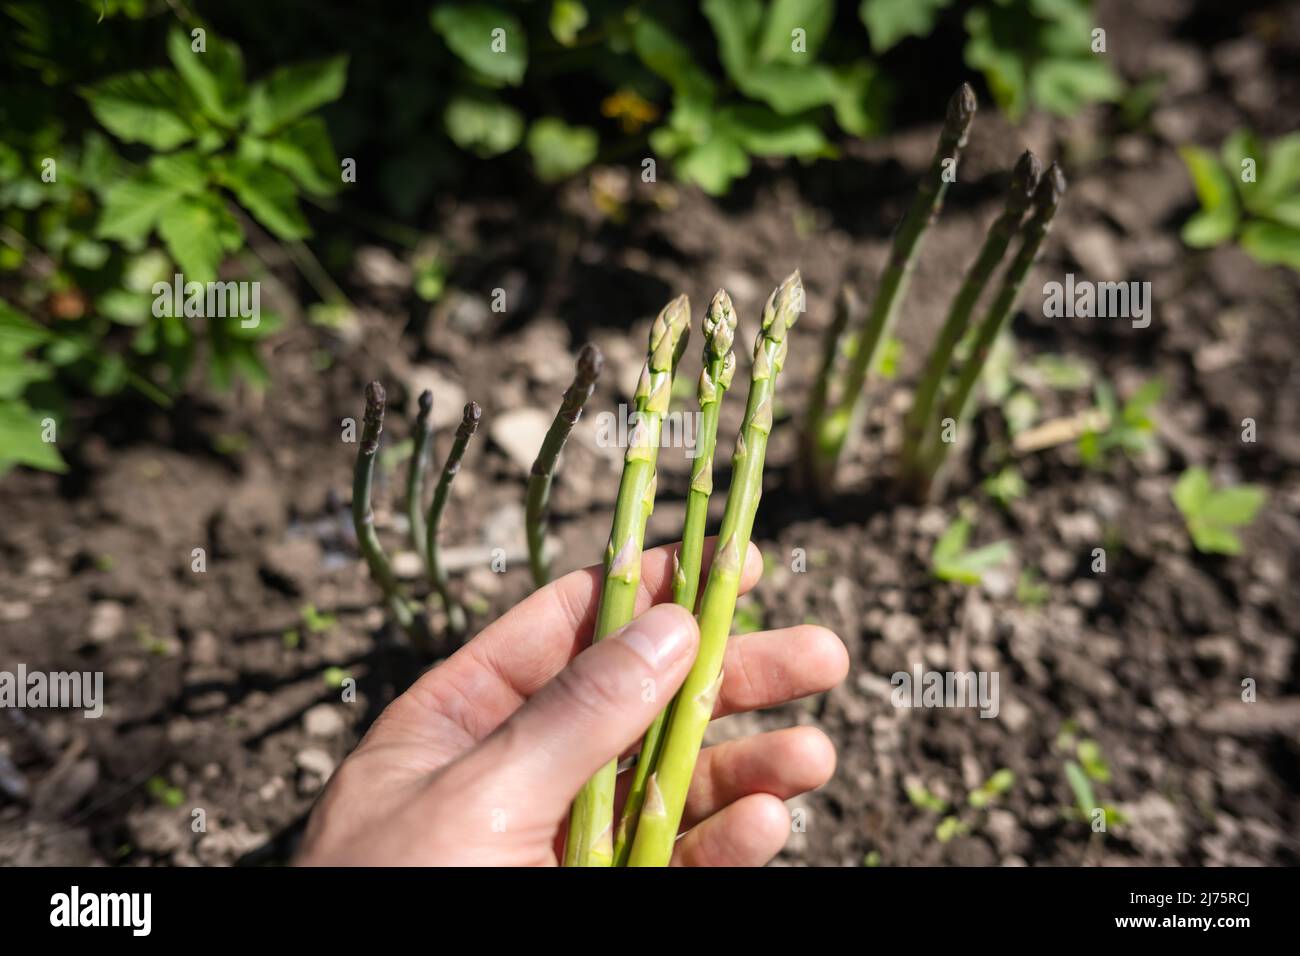 Spargel sprießt in den Händen eines Bauern im Garten. Frischer grüner Spargel sprießt. Food-Fotografie Stockfoto